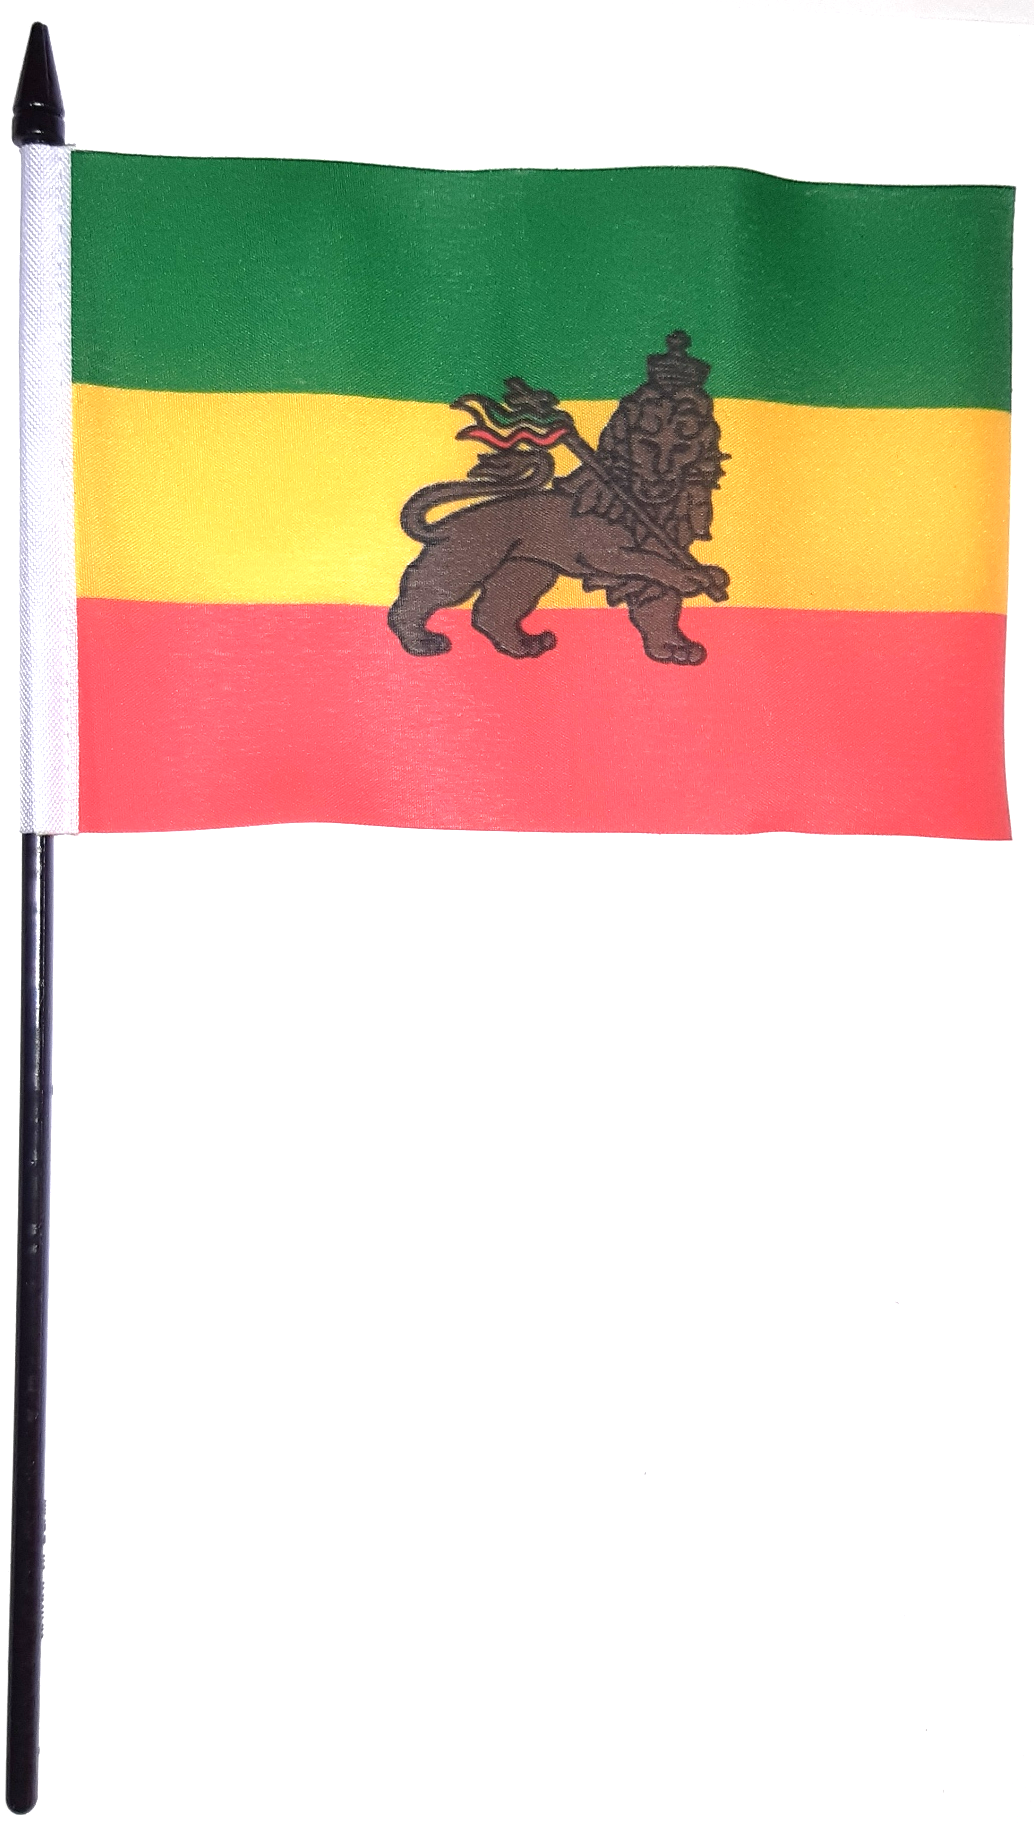 ETIOPIEN HANDFLAGGA LEJON 23X15CM